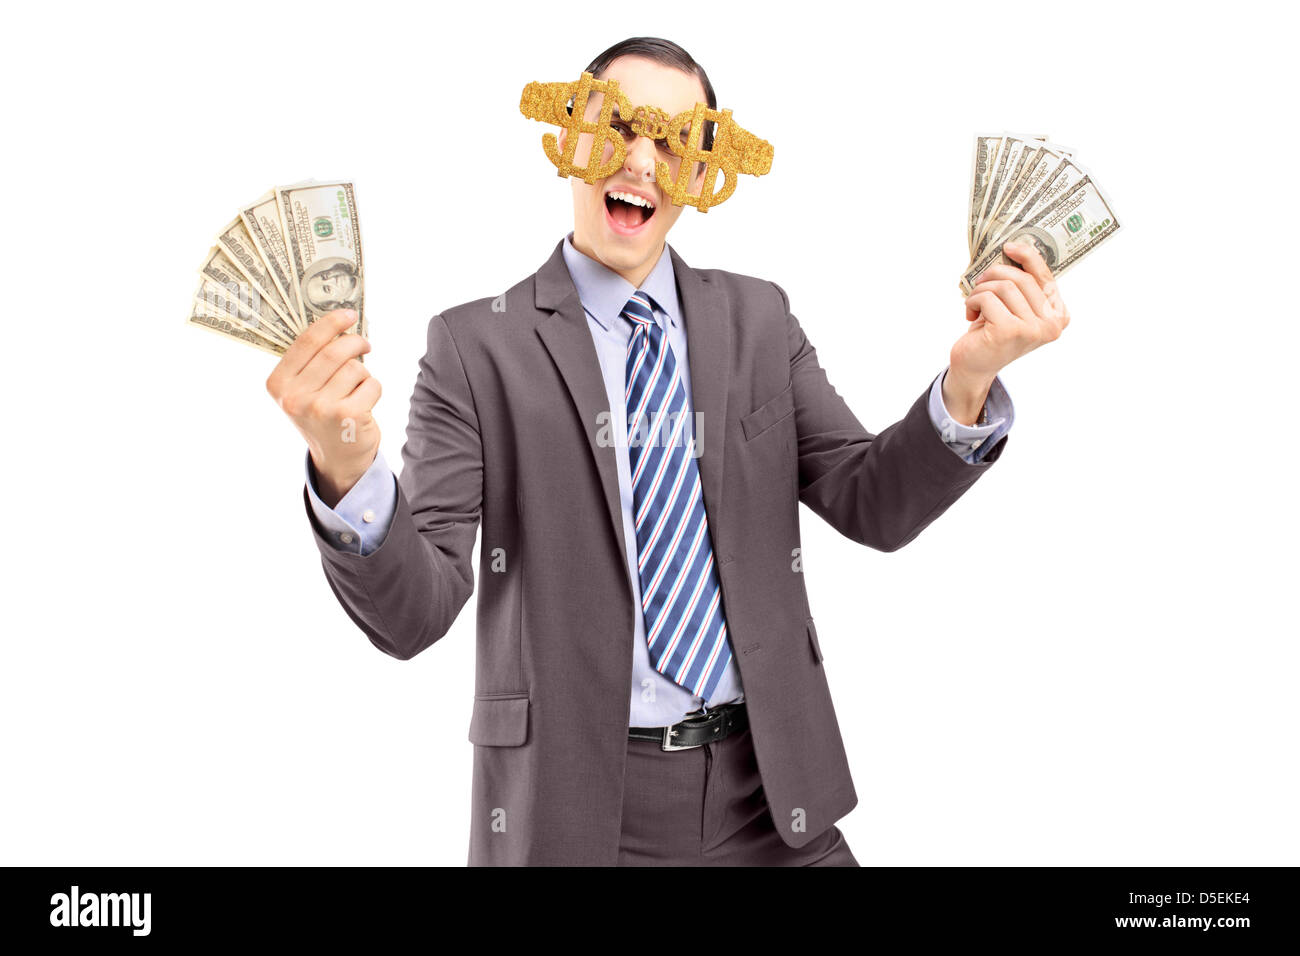 Ein glücklicher Mensch Dollarzeichen Brille trägt und hält US-Dollar, die isoliert auf weißem Hintergrund Stockfoto